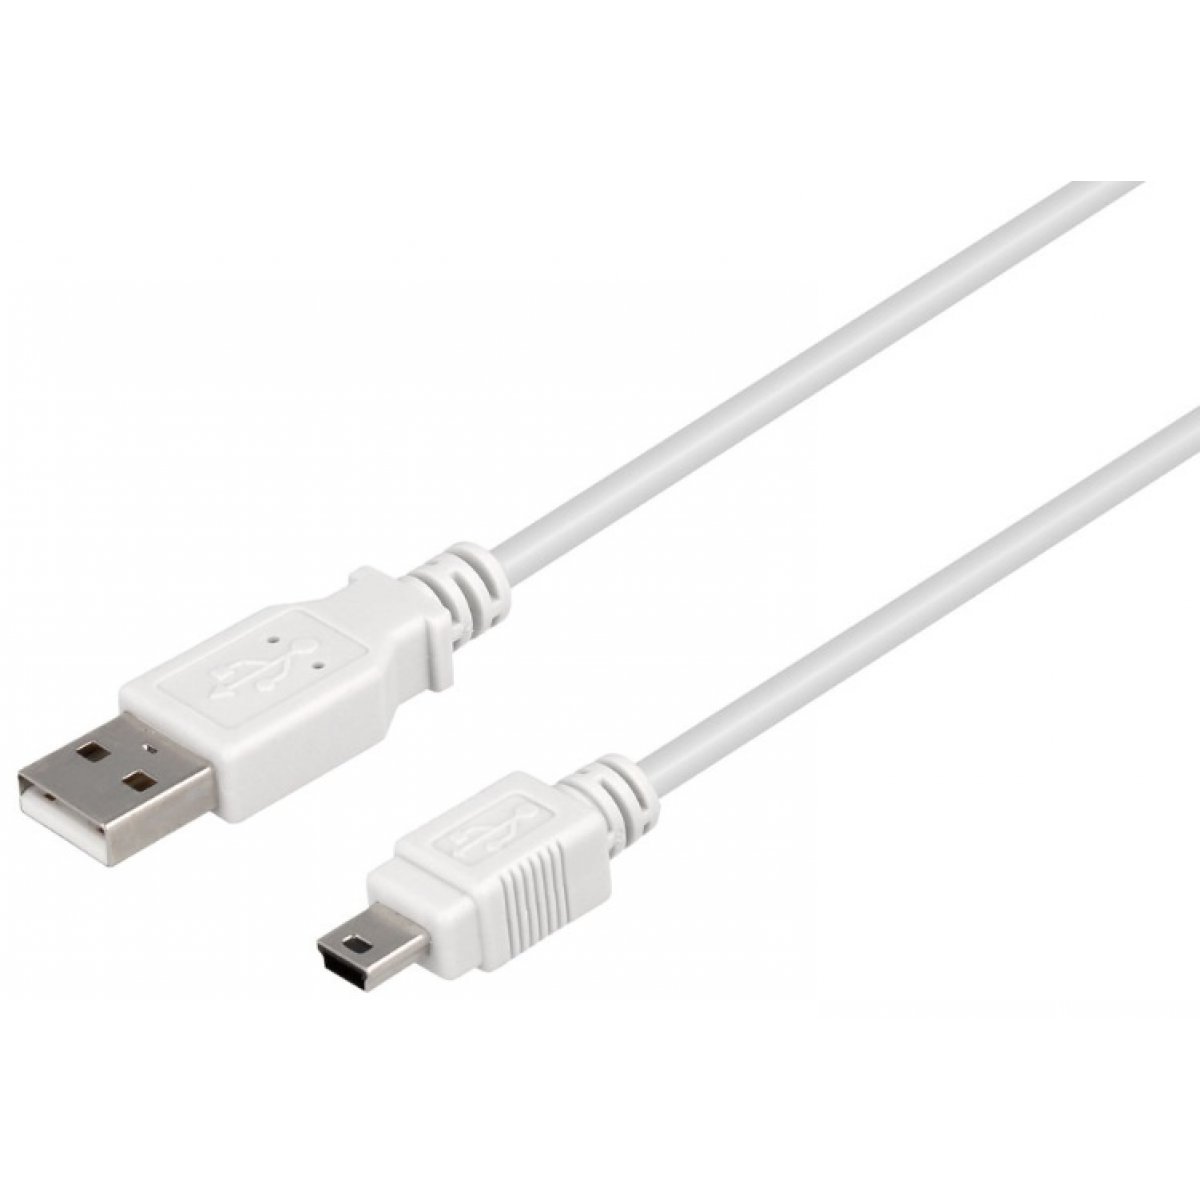 CABLE USB A/M - MINI USB B/M (5P) (1M)